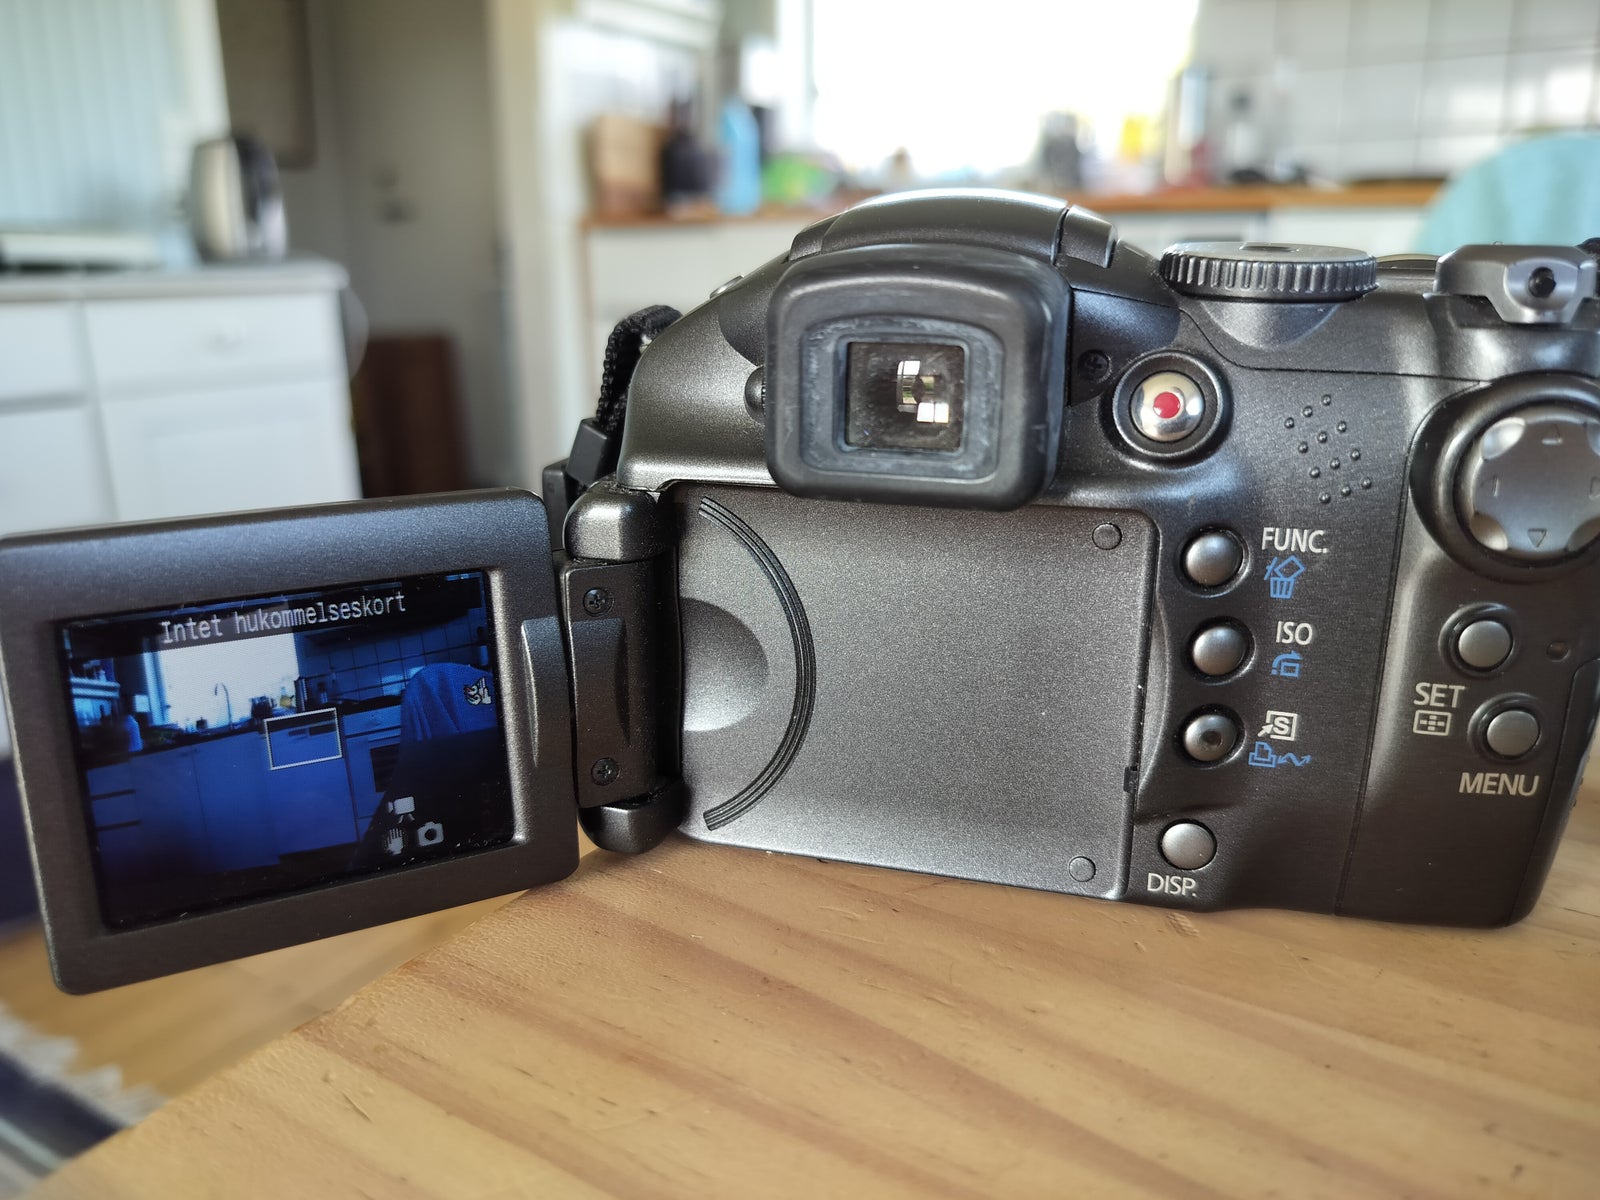 Canon, PowerShot S3 IS, 6.0 megapixels